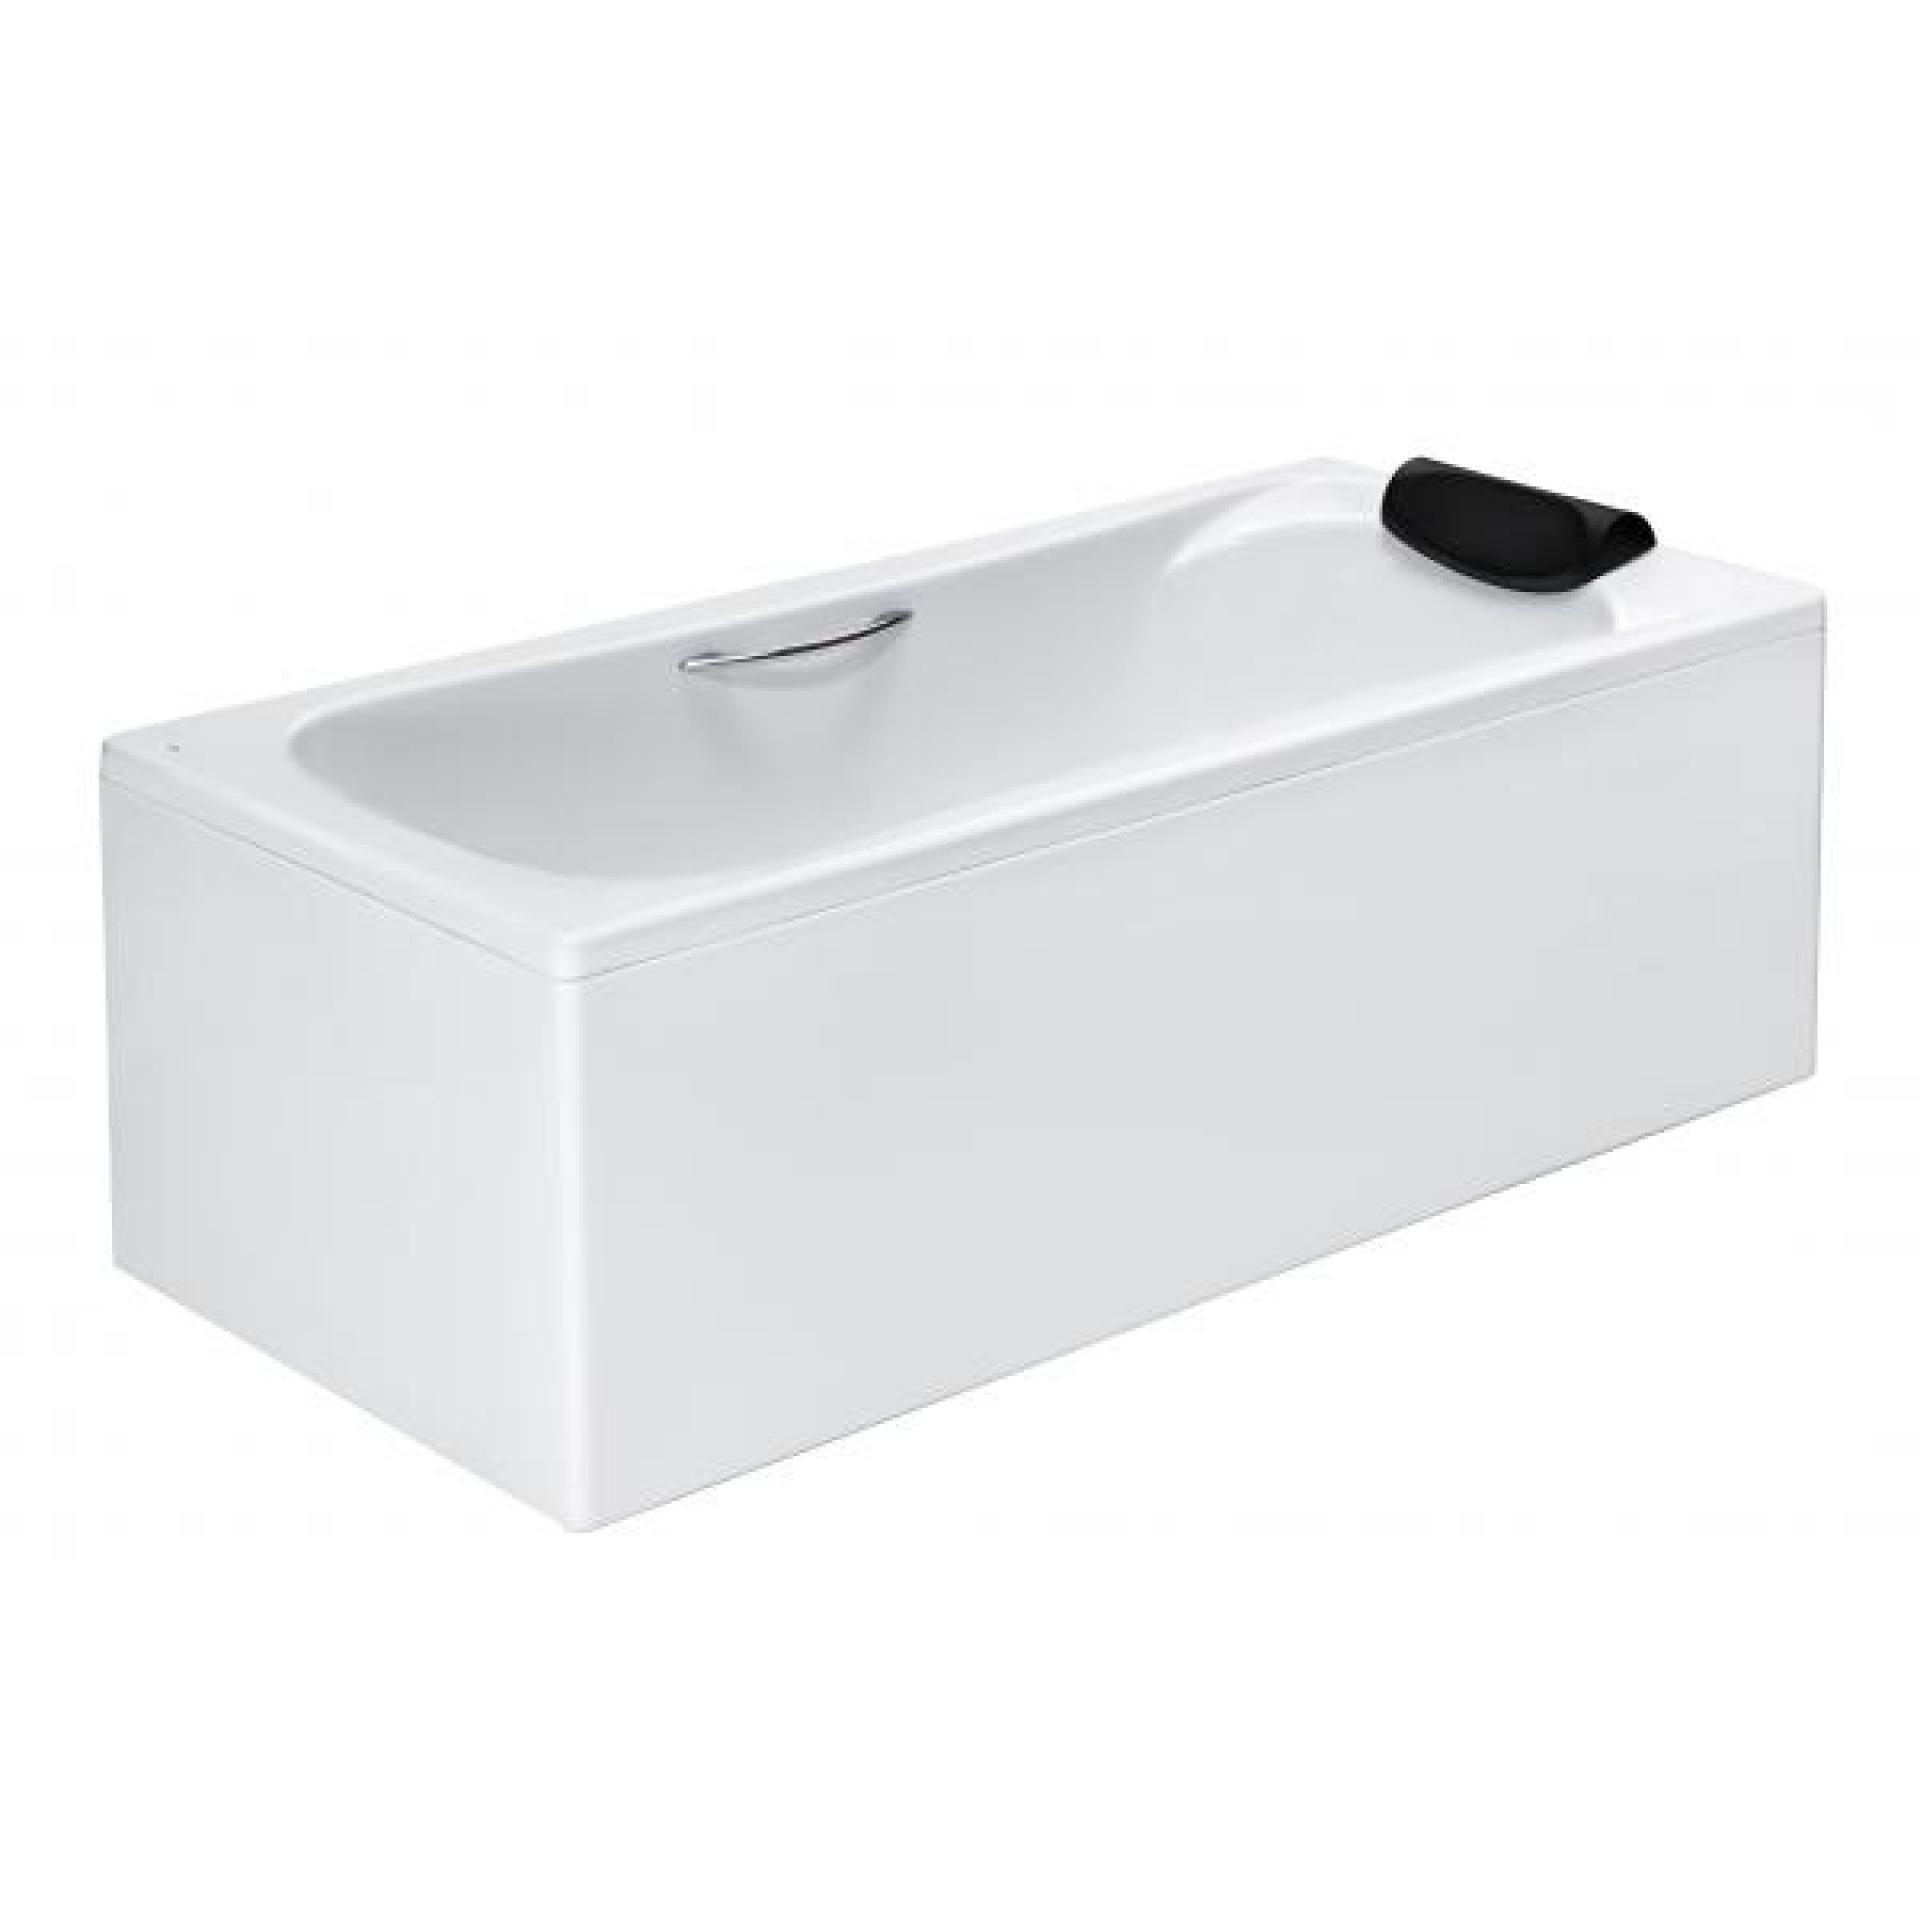 Фото: Комплект акриловая ванна Roca BeCool 180x80 + фронтальная панель + монтажный набор Roca в каталоге